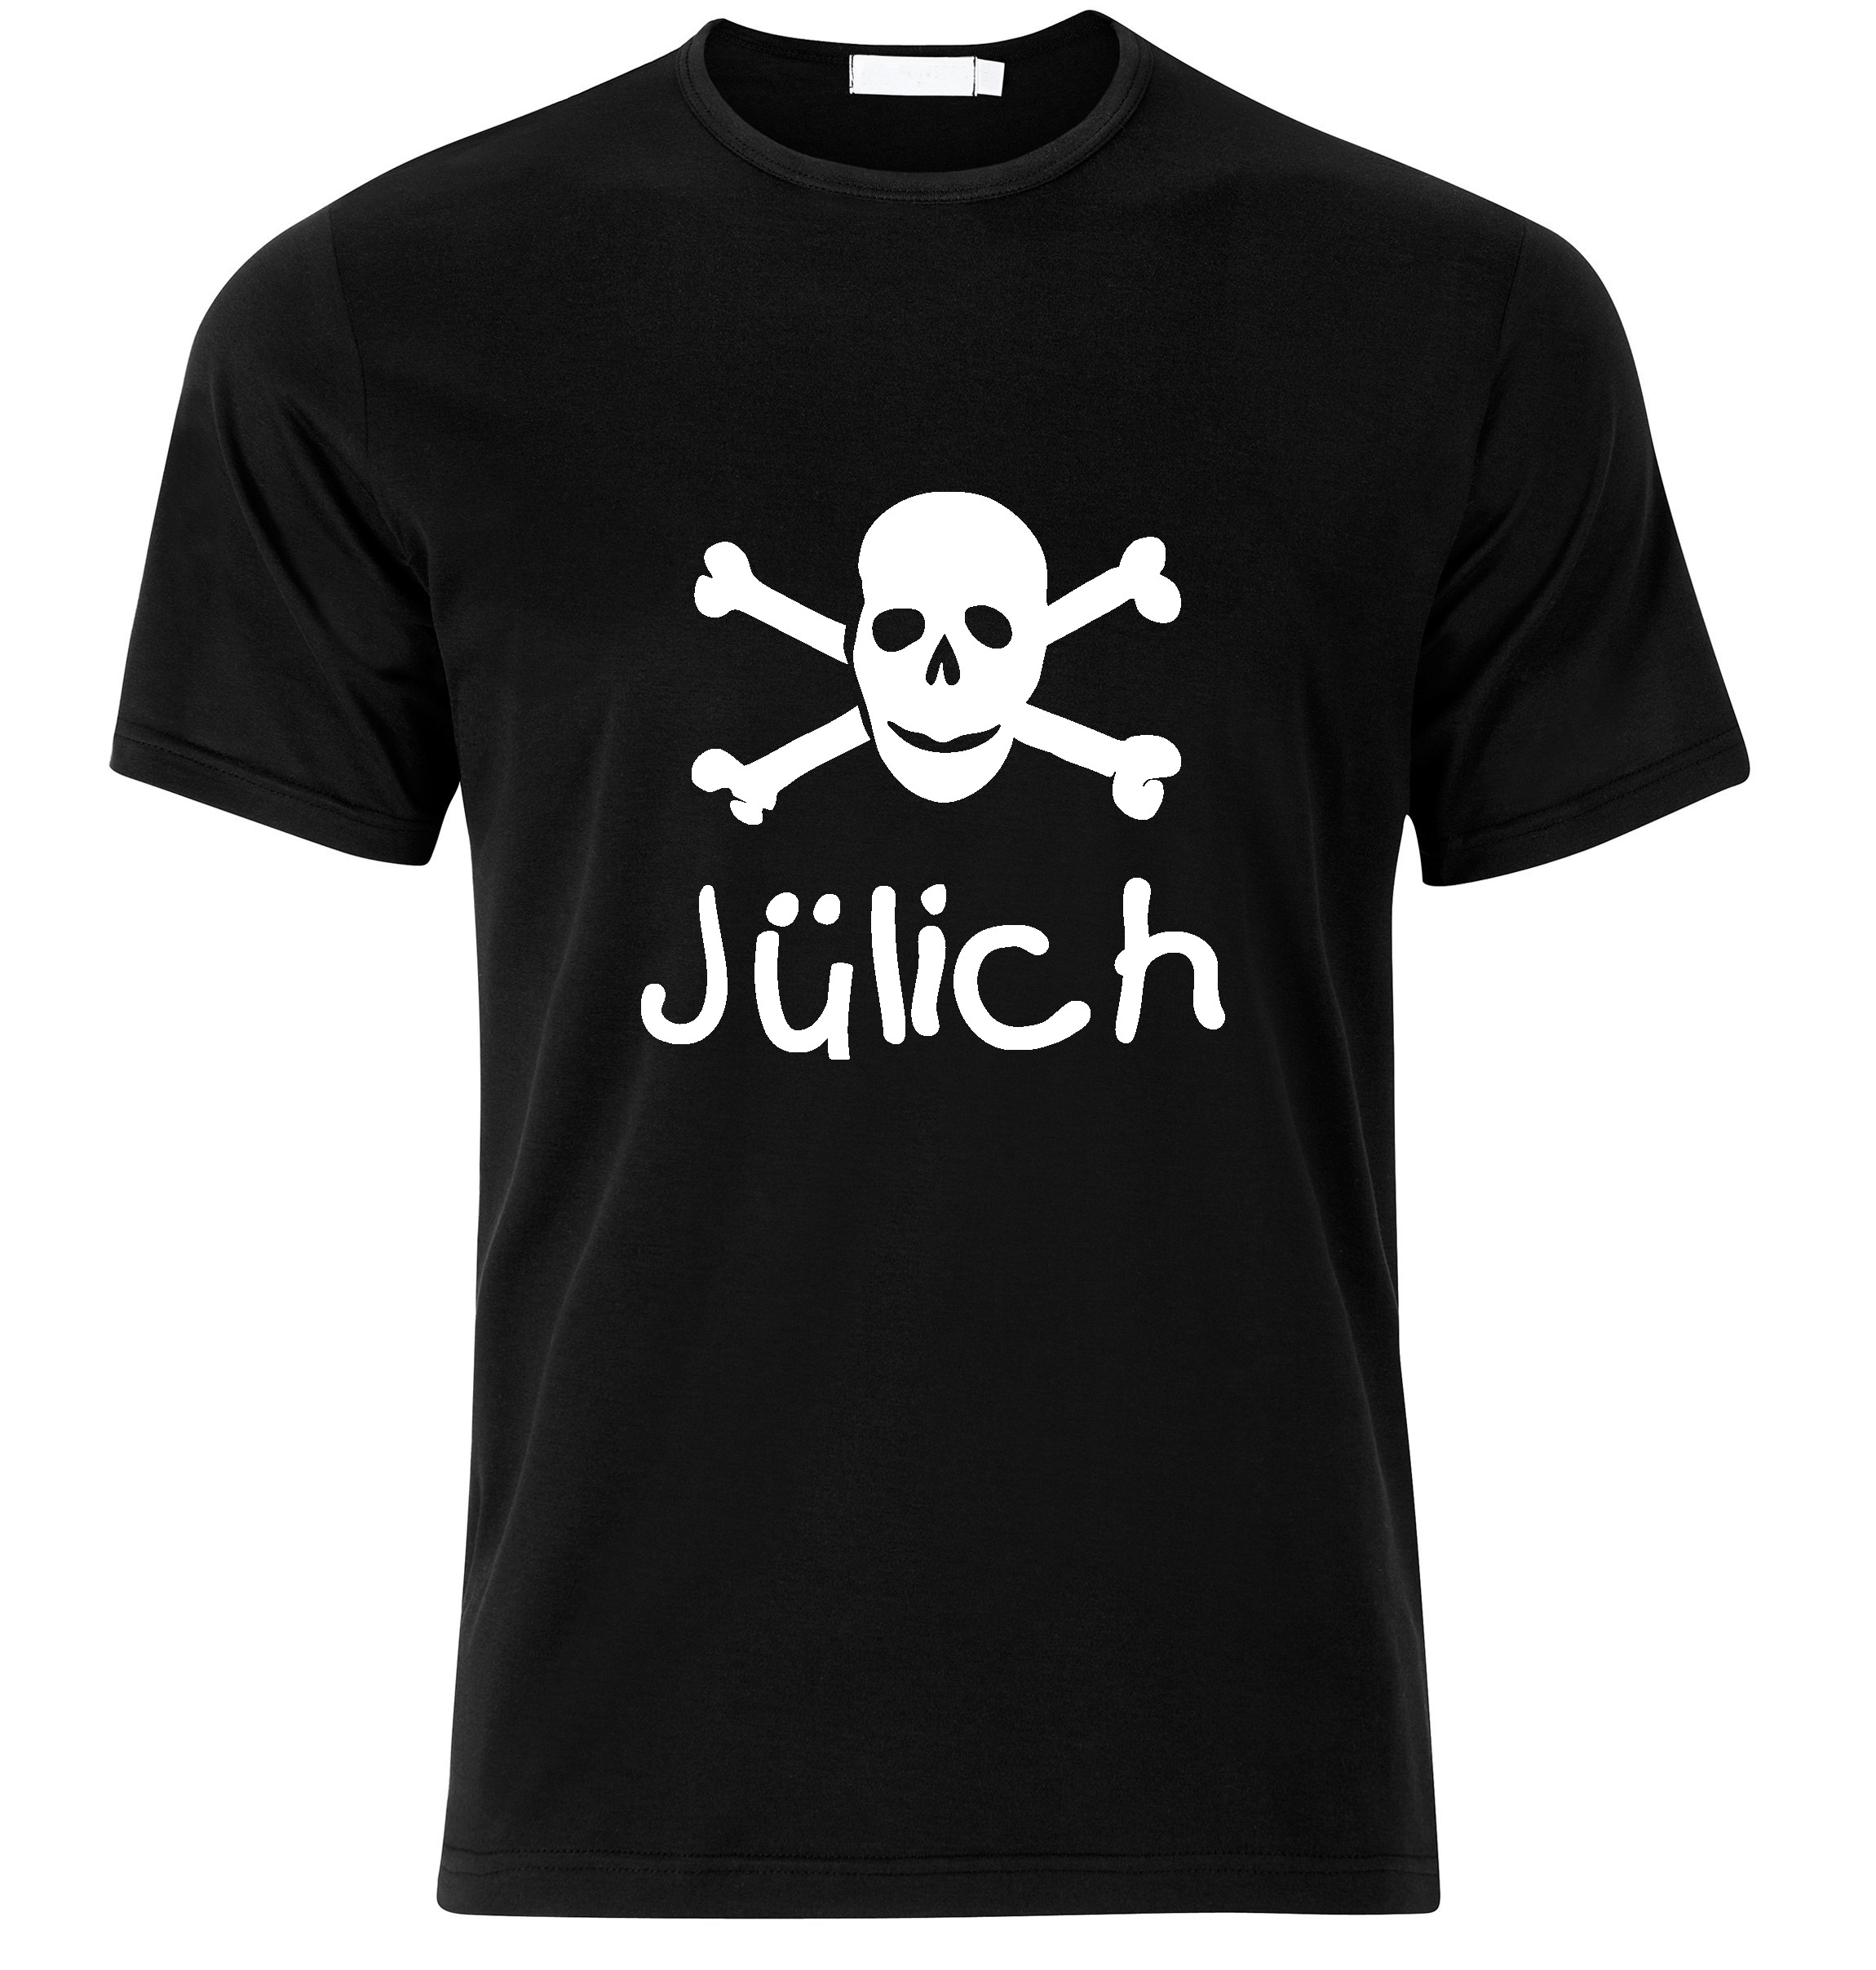 T-Shirt Jülich Jolly Roger, Totenkopf